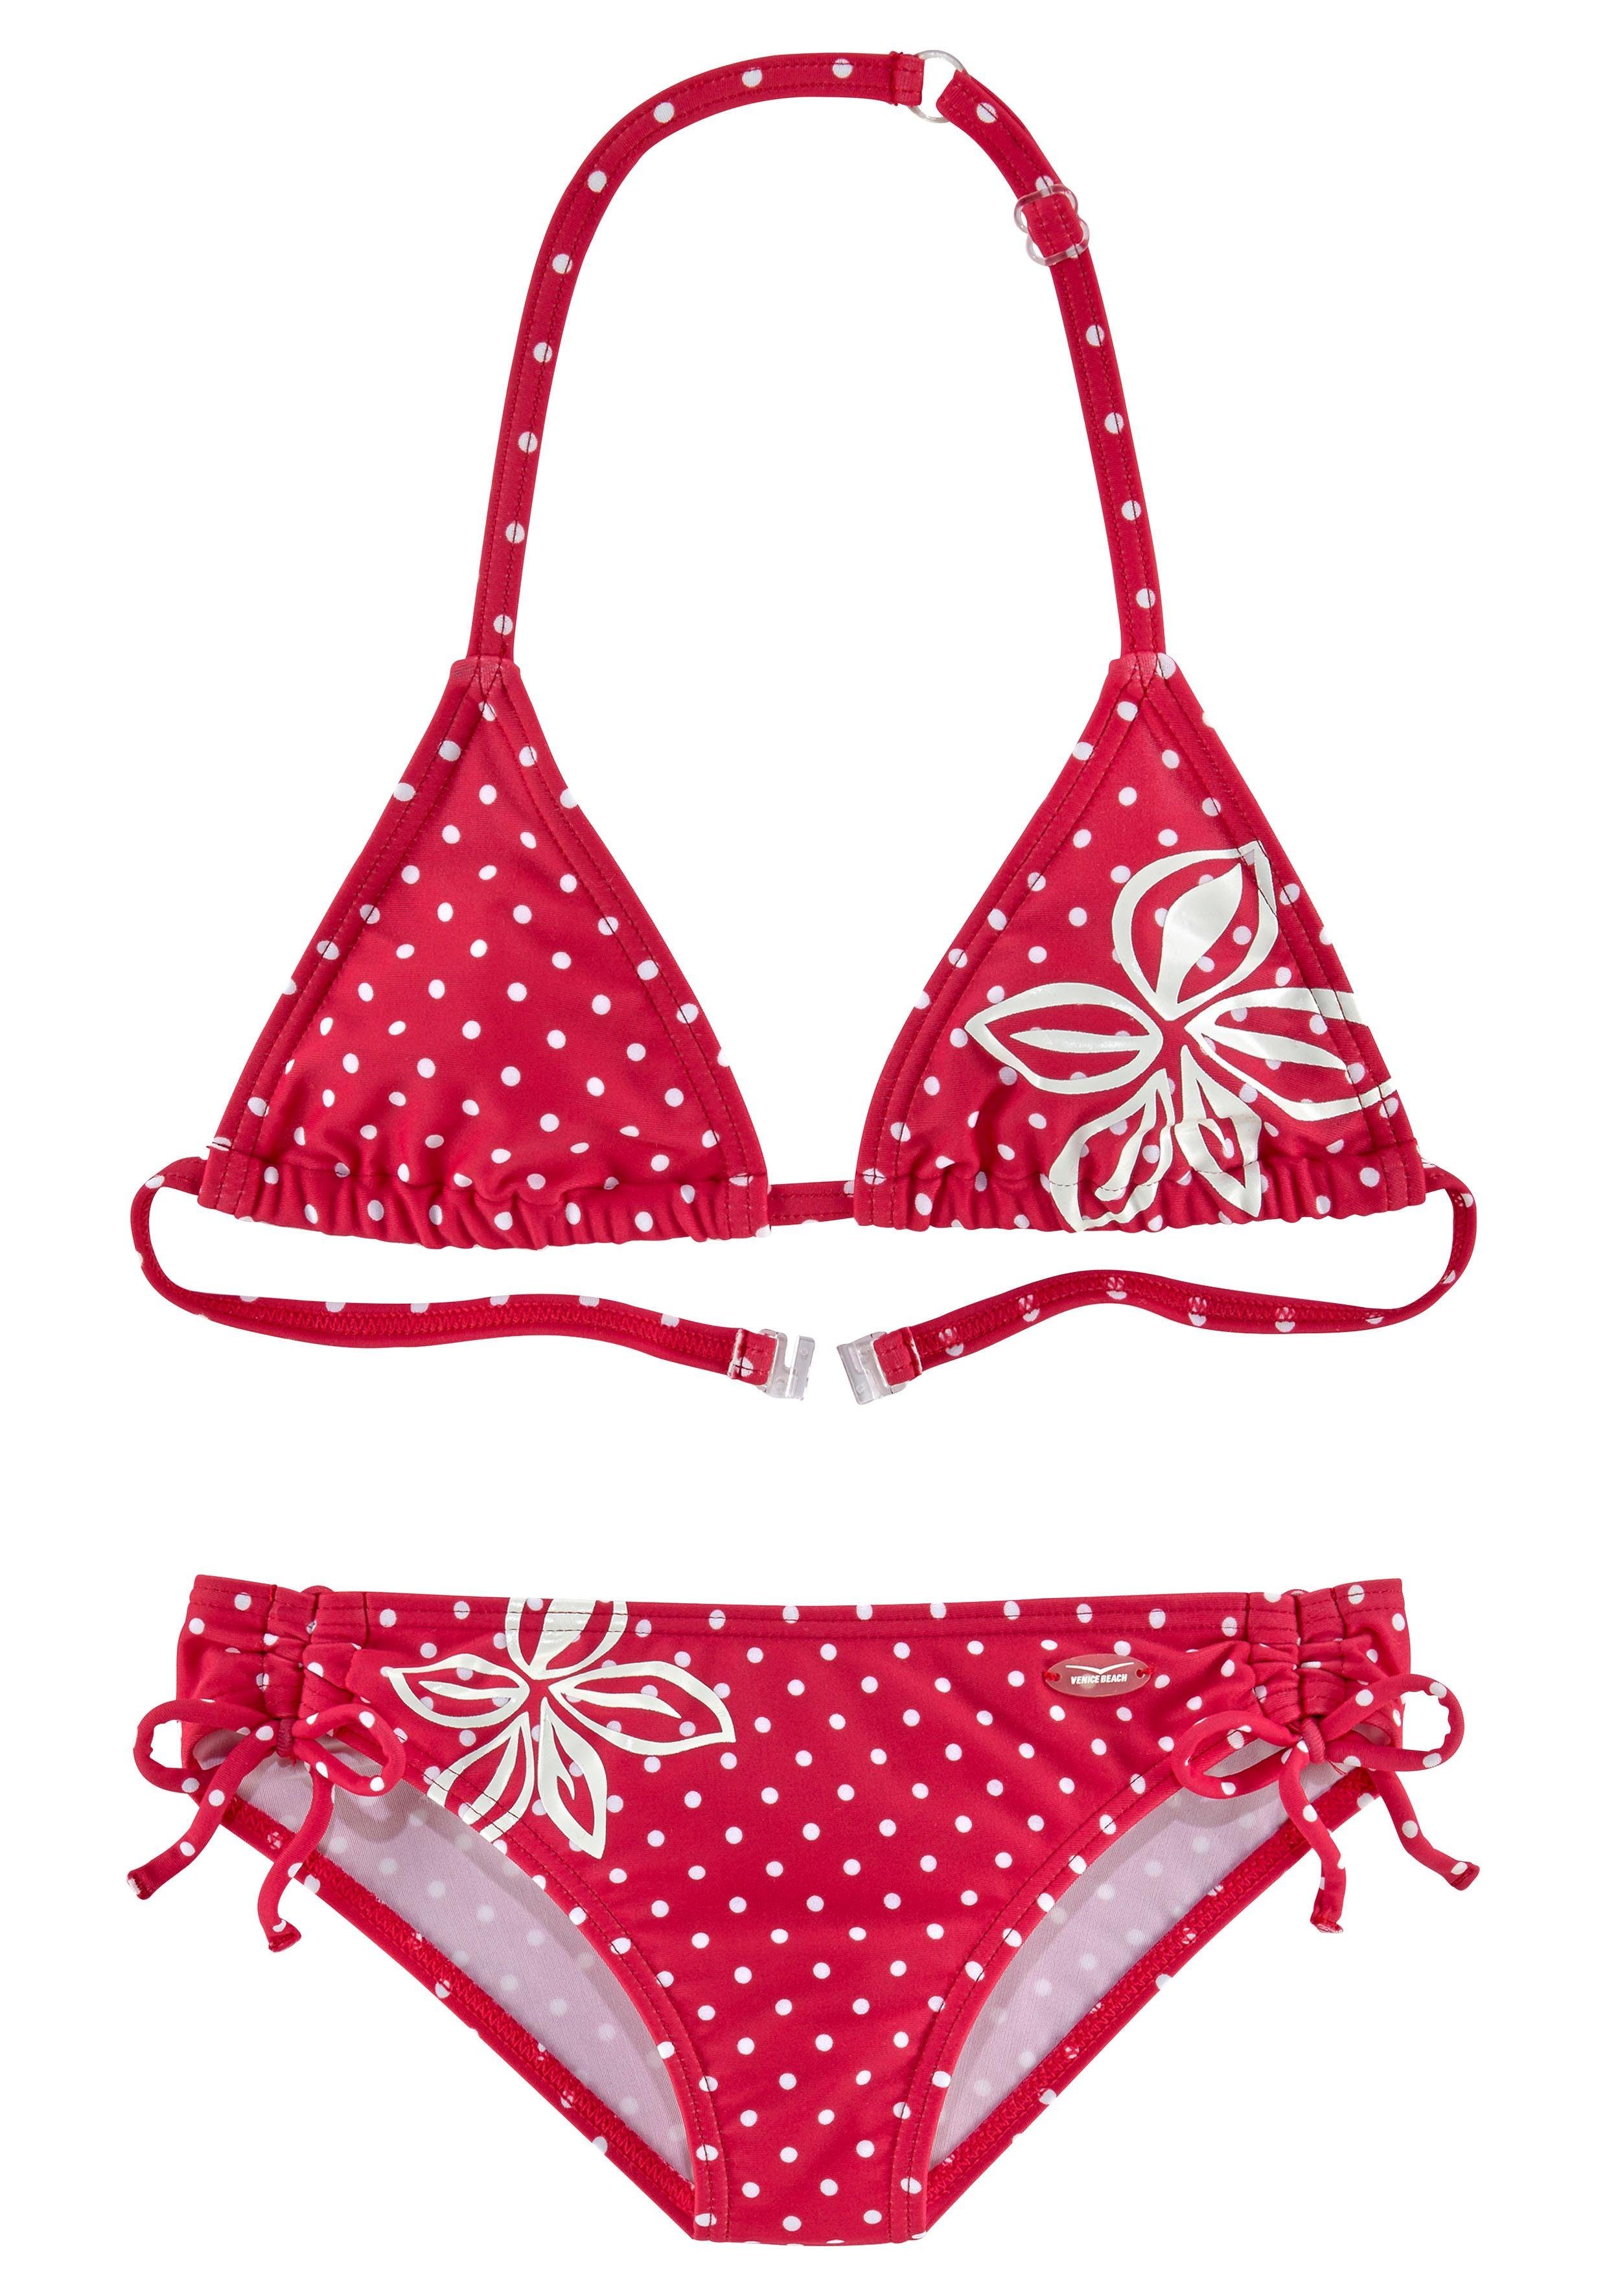 Venice Beach Triangel-Bikini im modischen Punkte-Design rot | Triangel-Bikinis